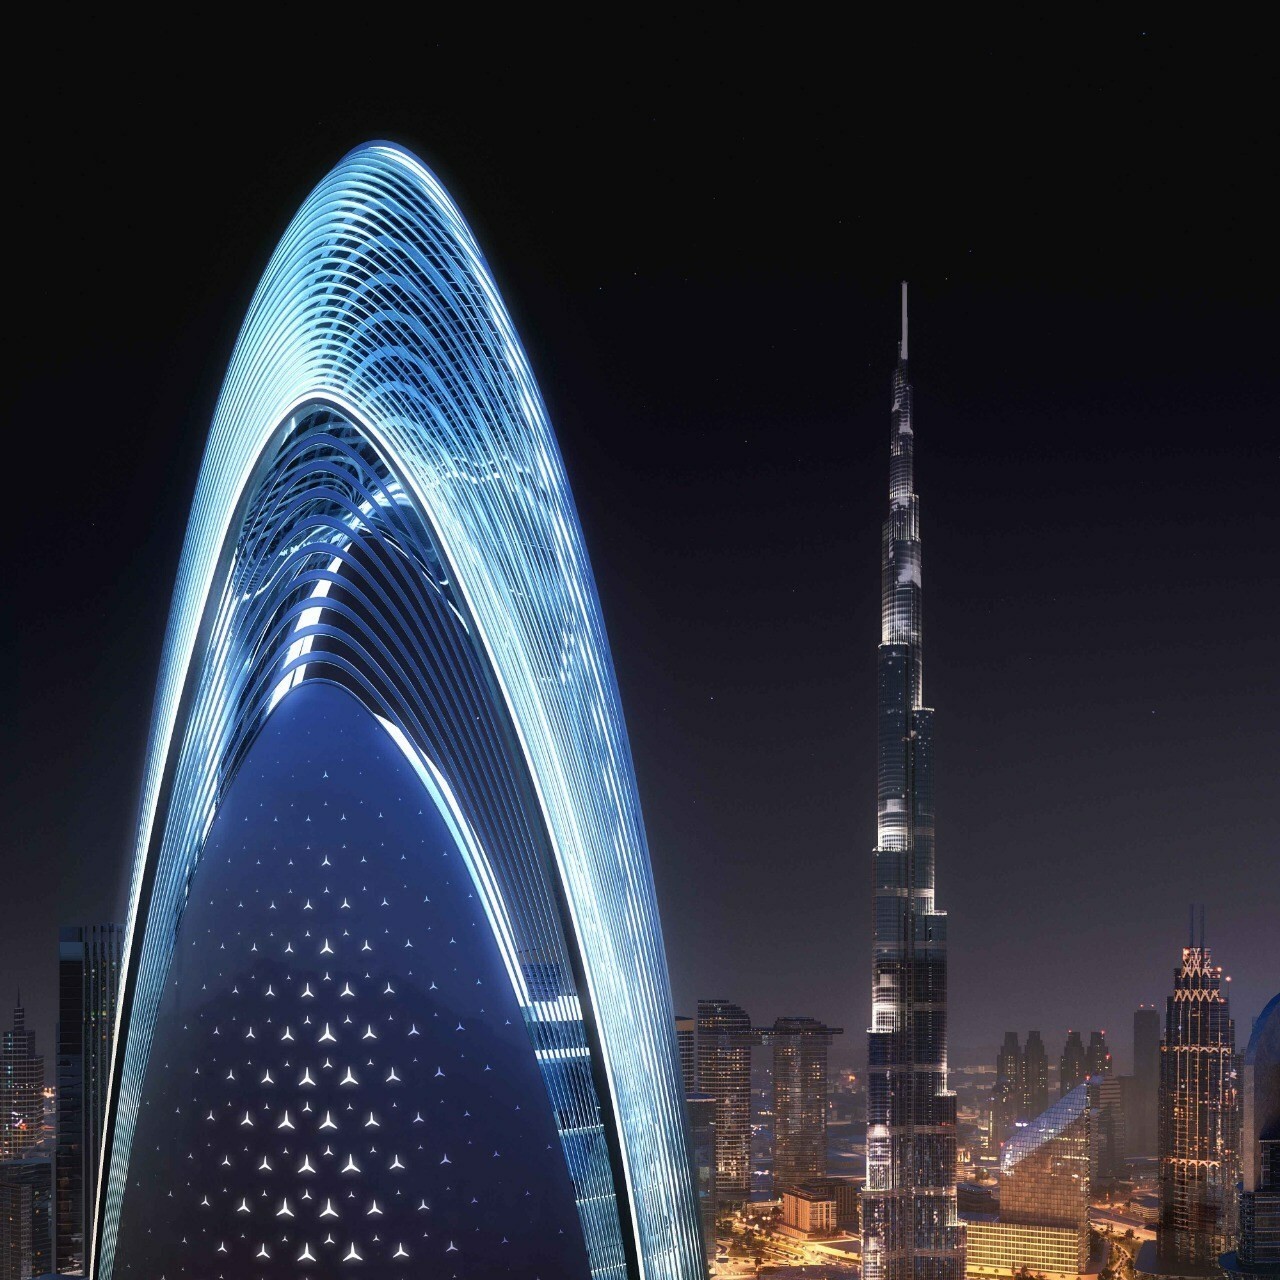 La tour d'habitation Mercedes-Benz devrait prendre place au cœur de Dubaï, avec vue sur le Burj Khalifa.